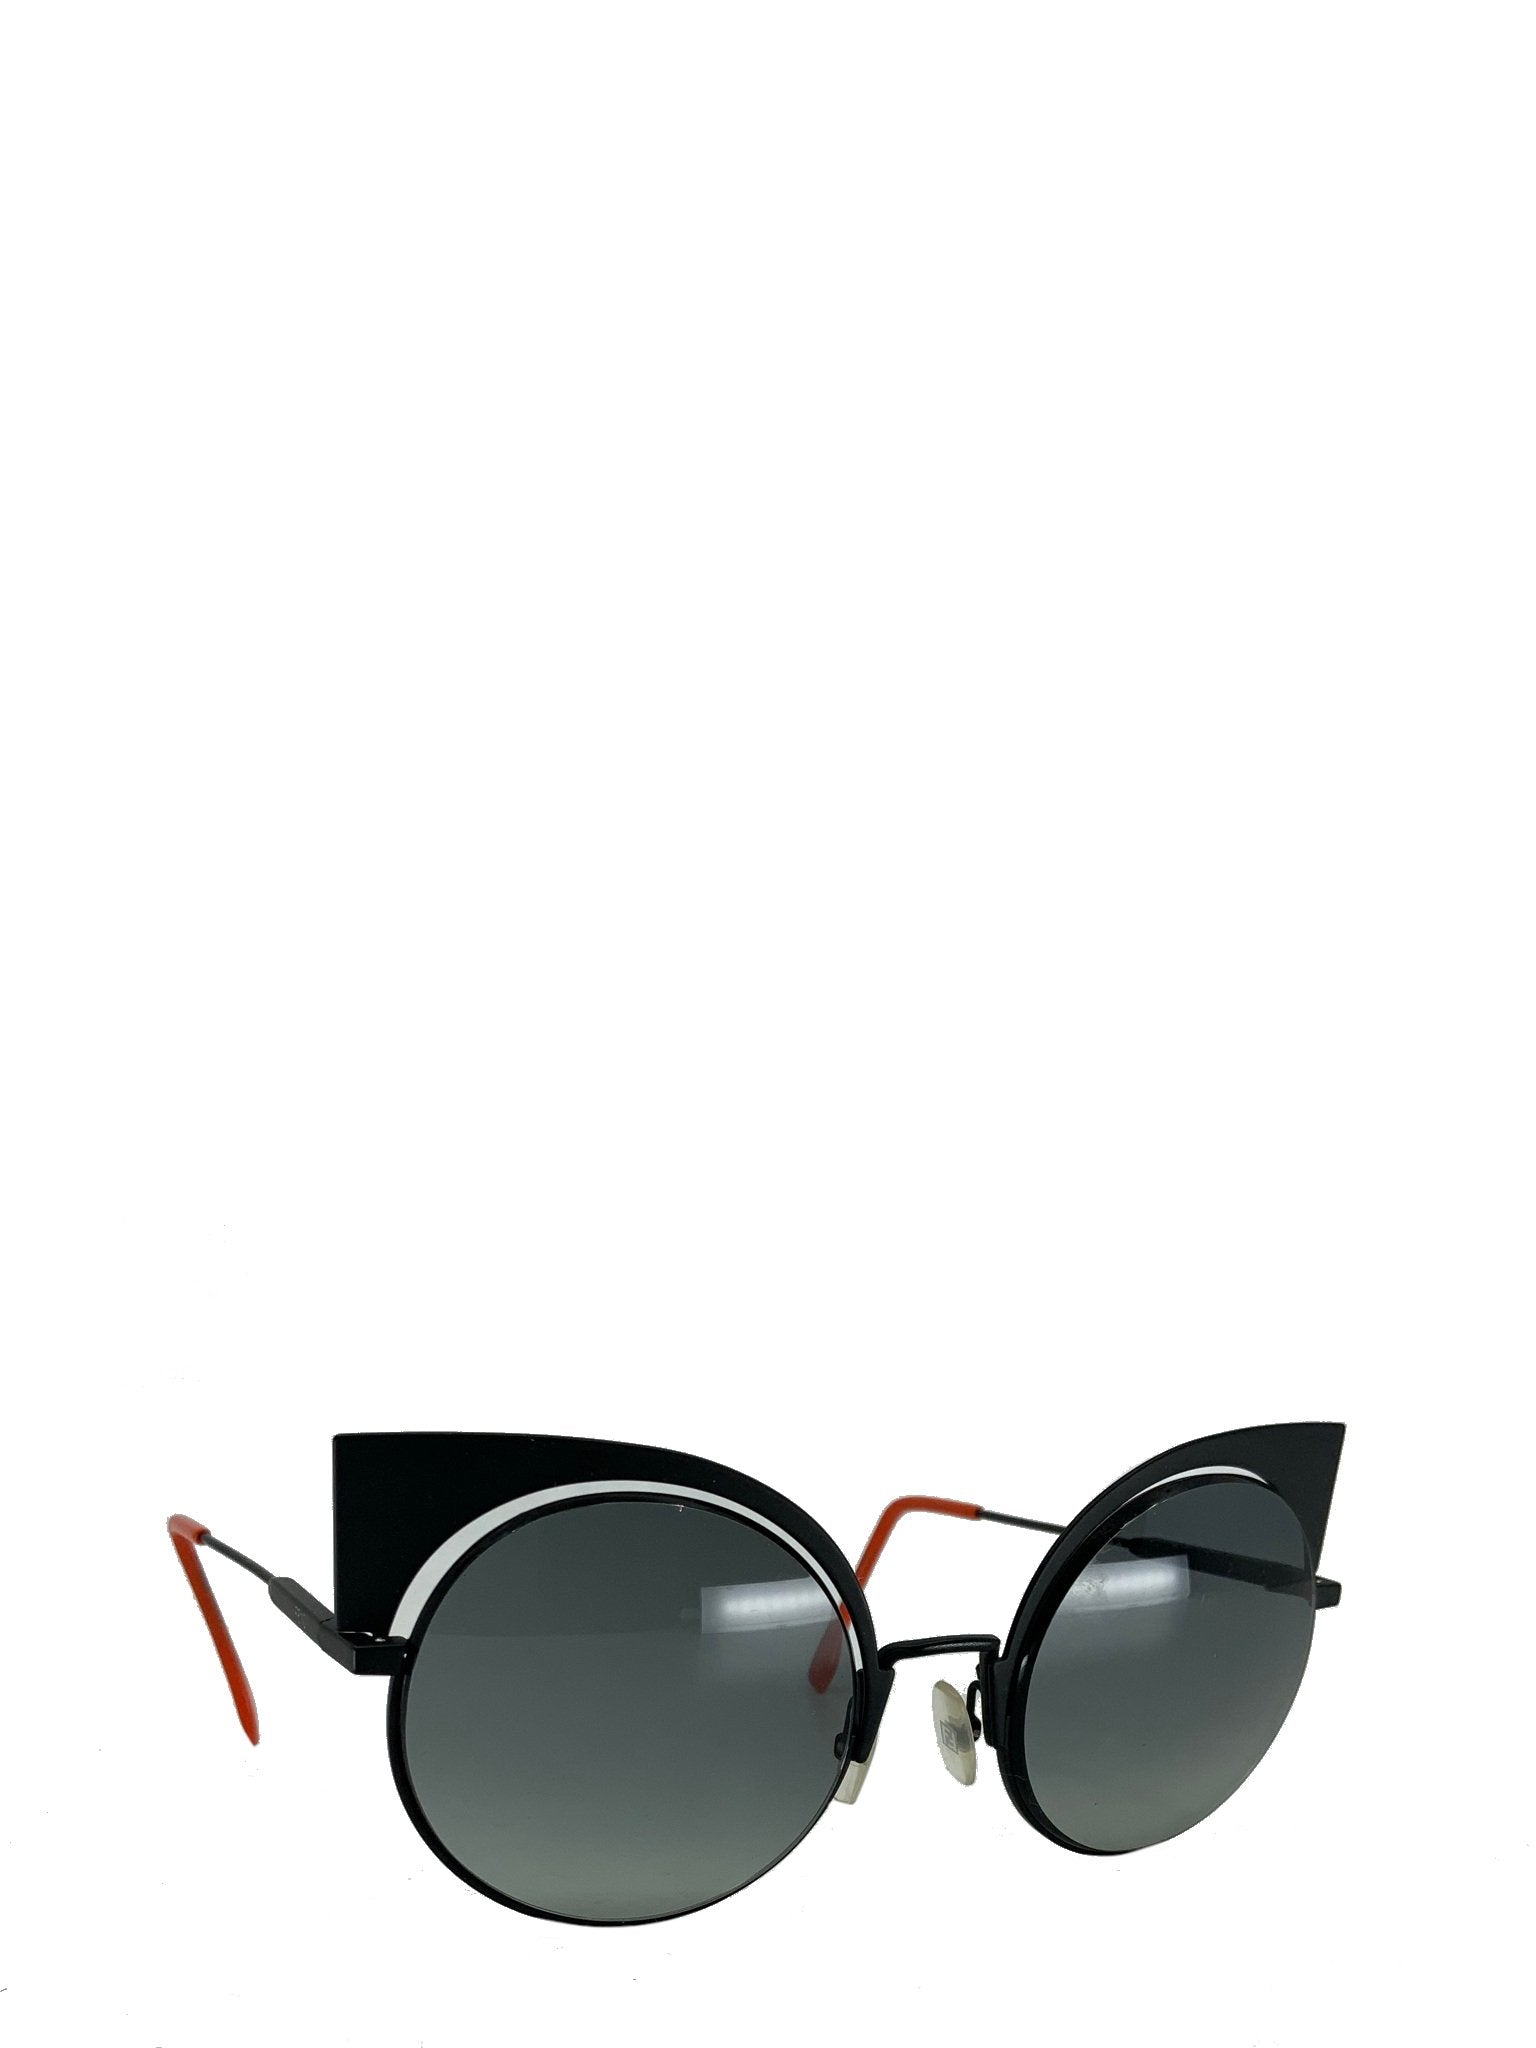 Fitness korrekt skibsbygning Fendi Eyeshine Cat Eye Sunglasses NEW - Consigned Designs